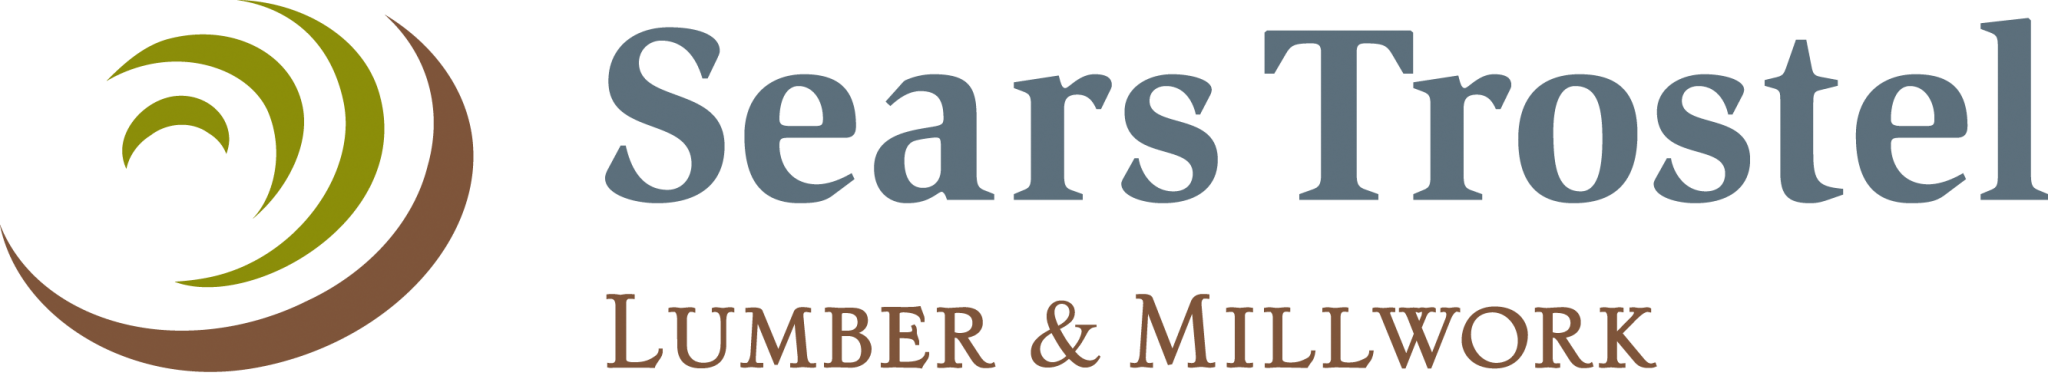 Sears Trostel logo